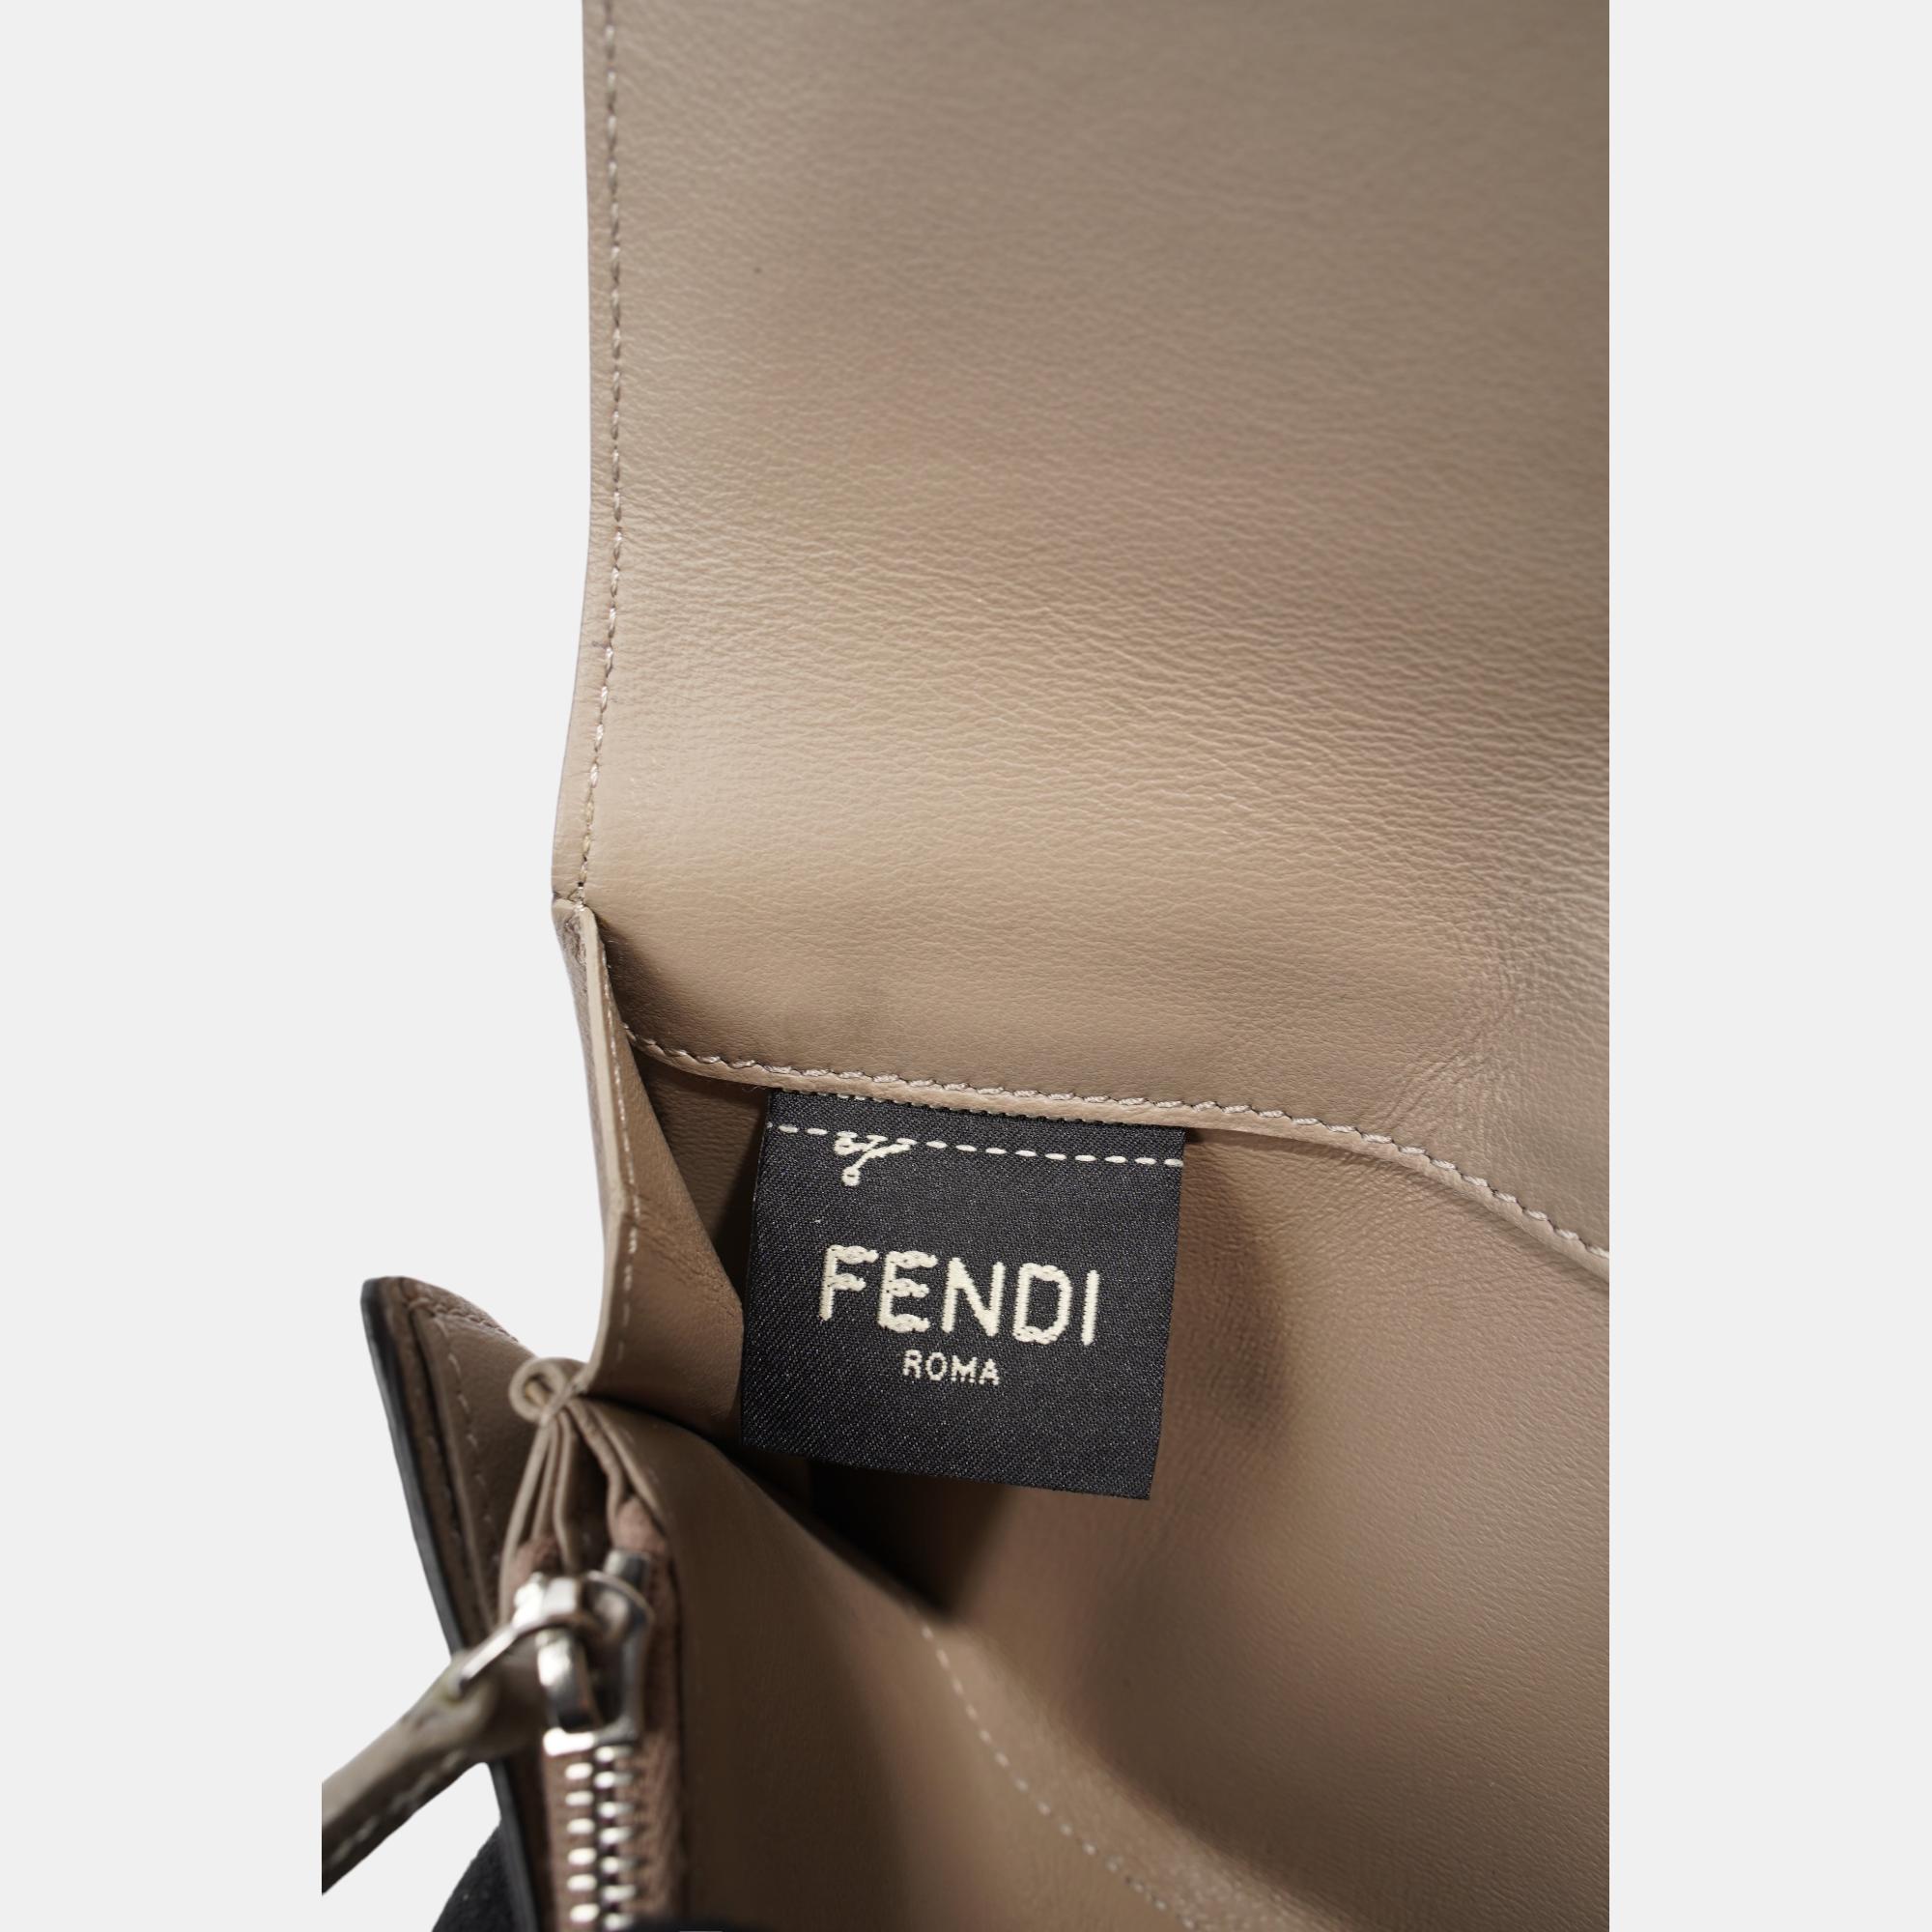 Fendi Peekaboo Long Wallet Grey Leather